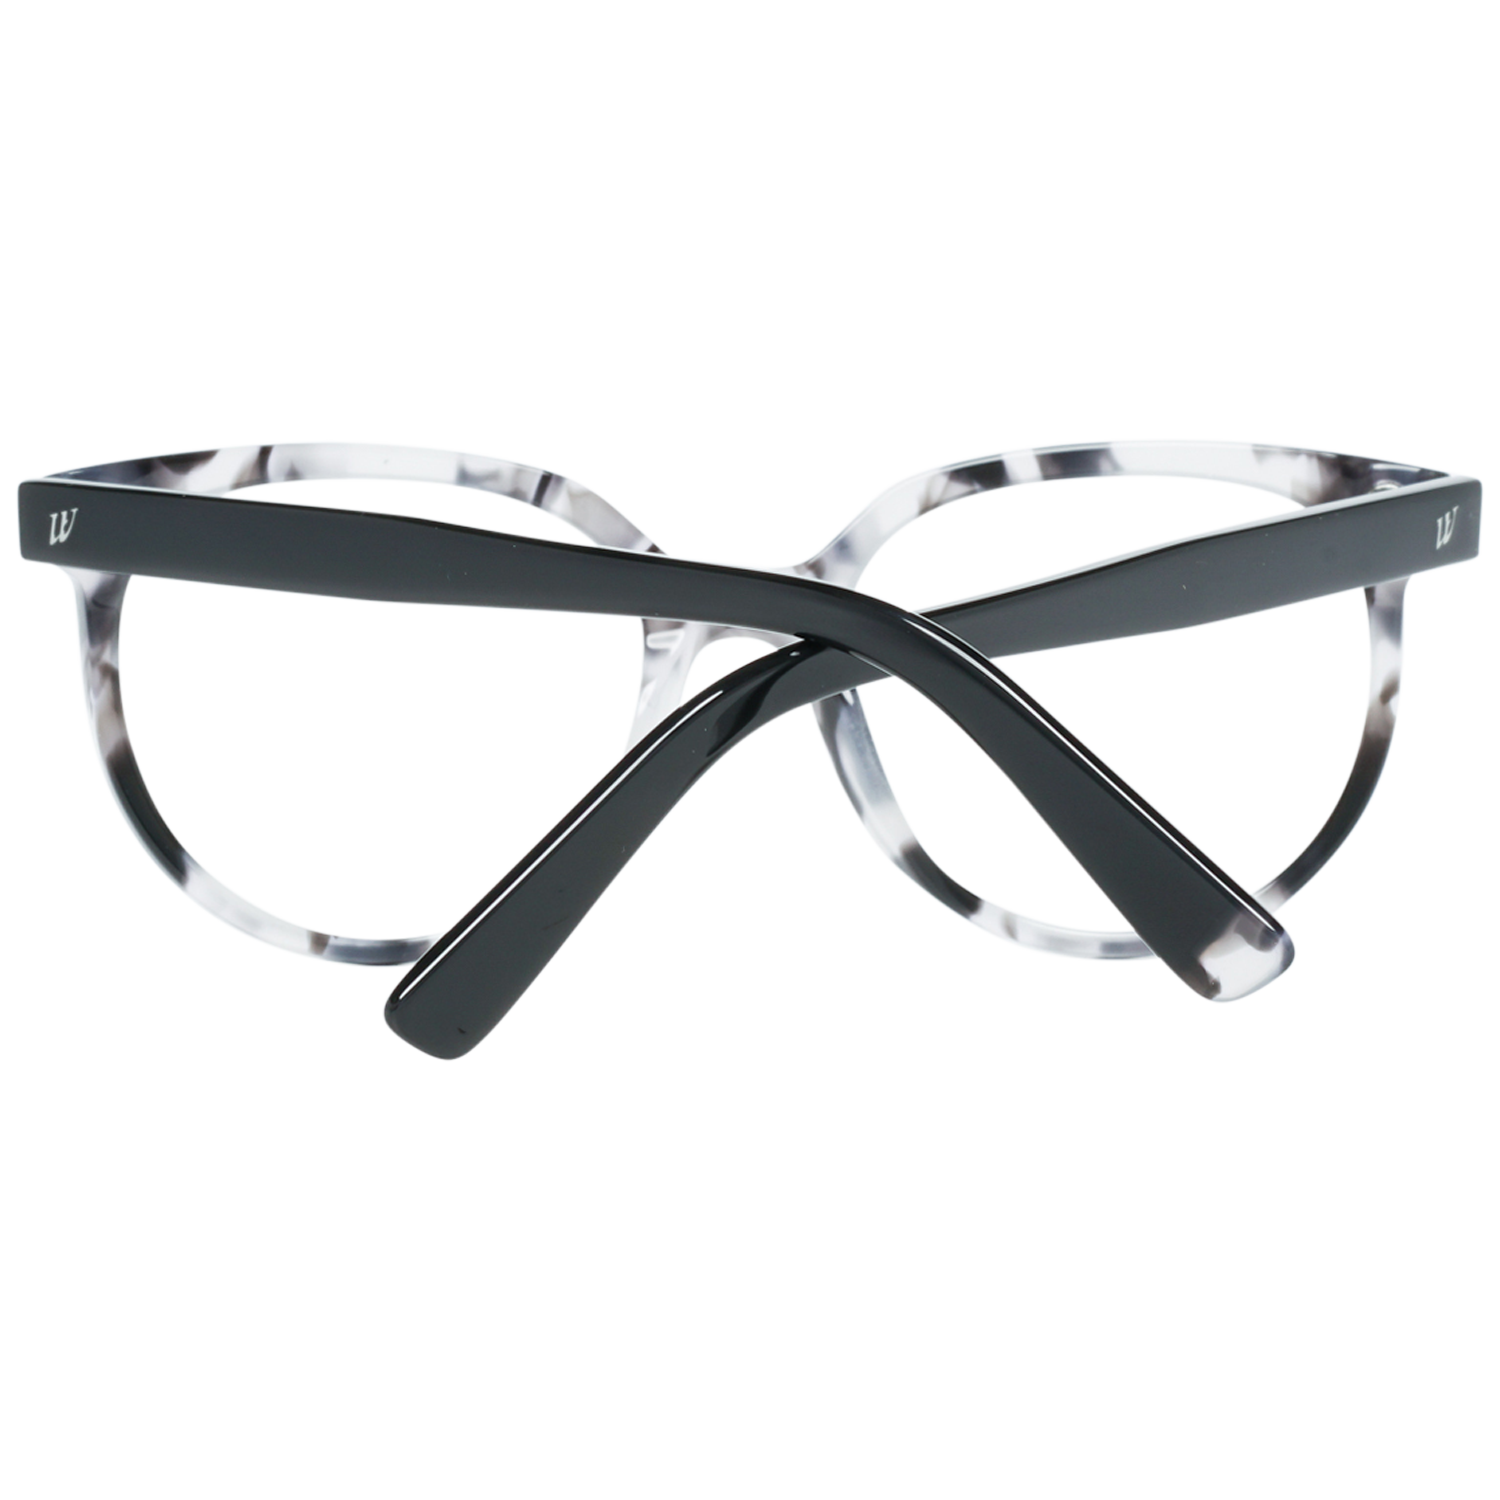 Web Frames Web Glasses Optical Frame WE5216 055 50 Eyeglasses Eyewear UK USA Australia 